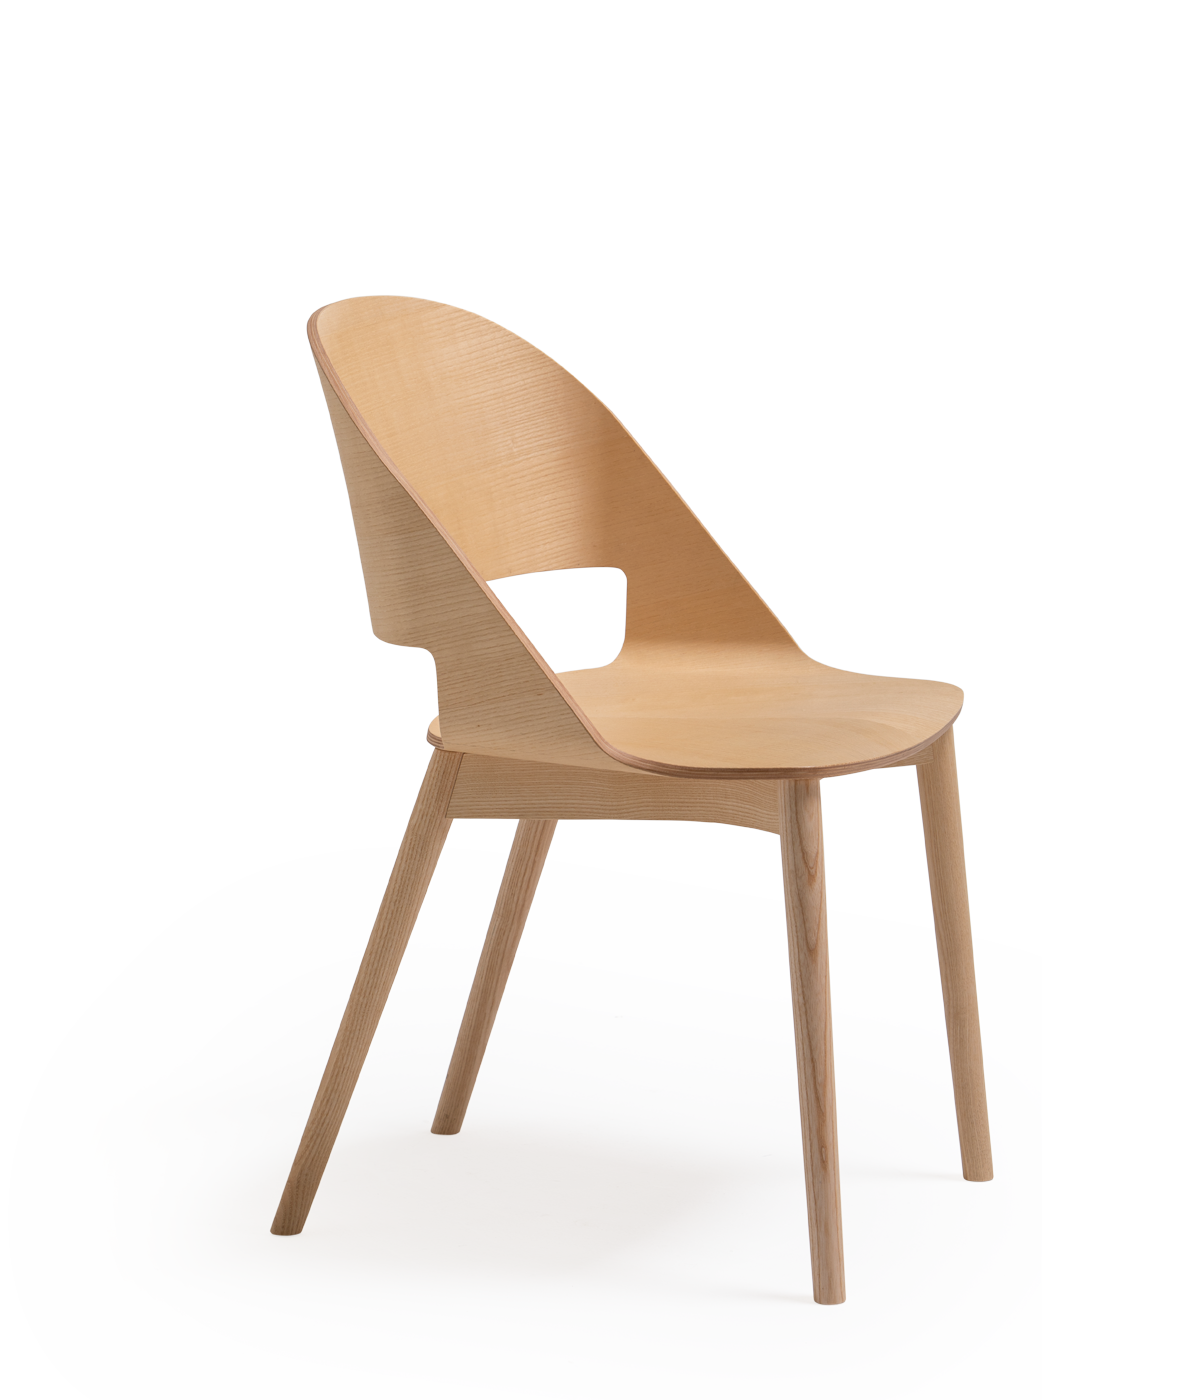 Cadira Goose Modelo C amb potes de fusta - Vergés